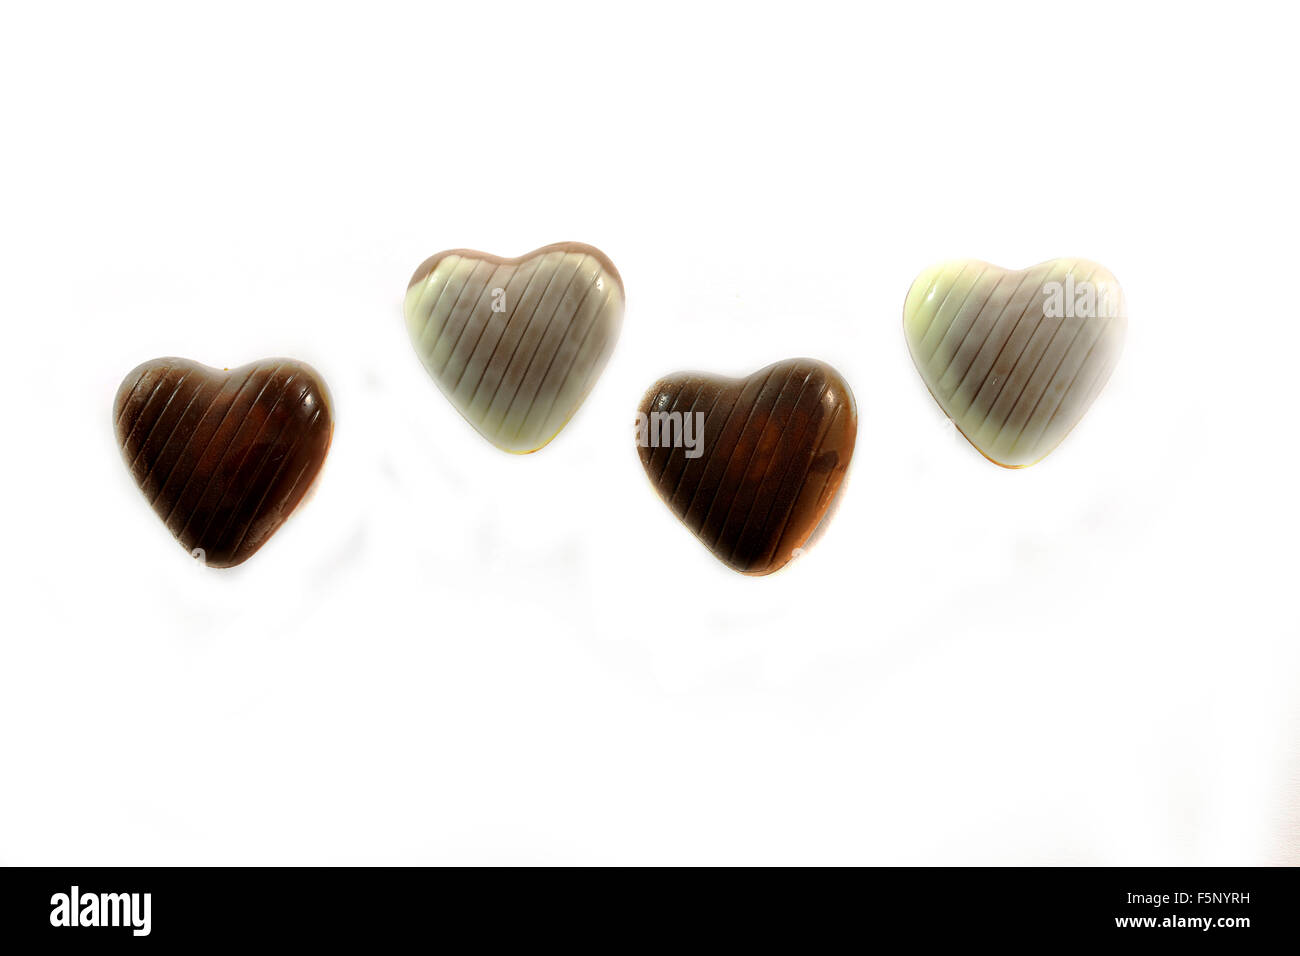 Gustosi cioccolatini close-up fotografato su sfondo bianco Foto Stock